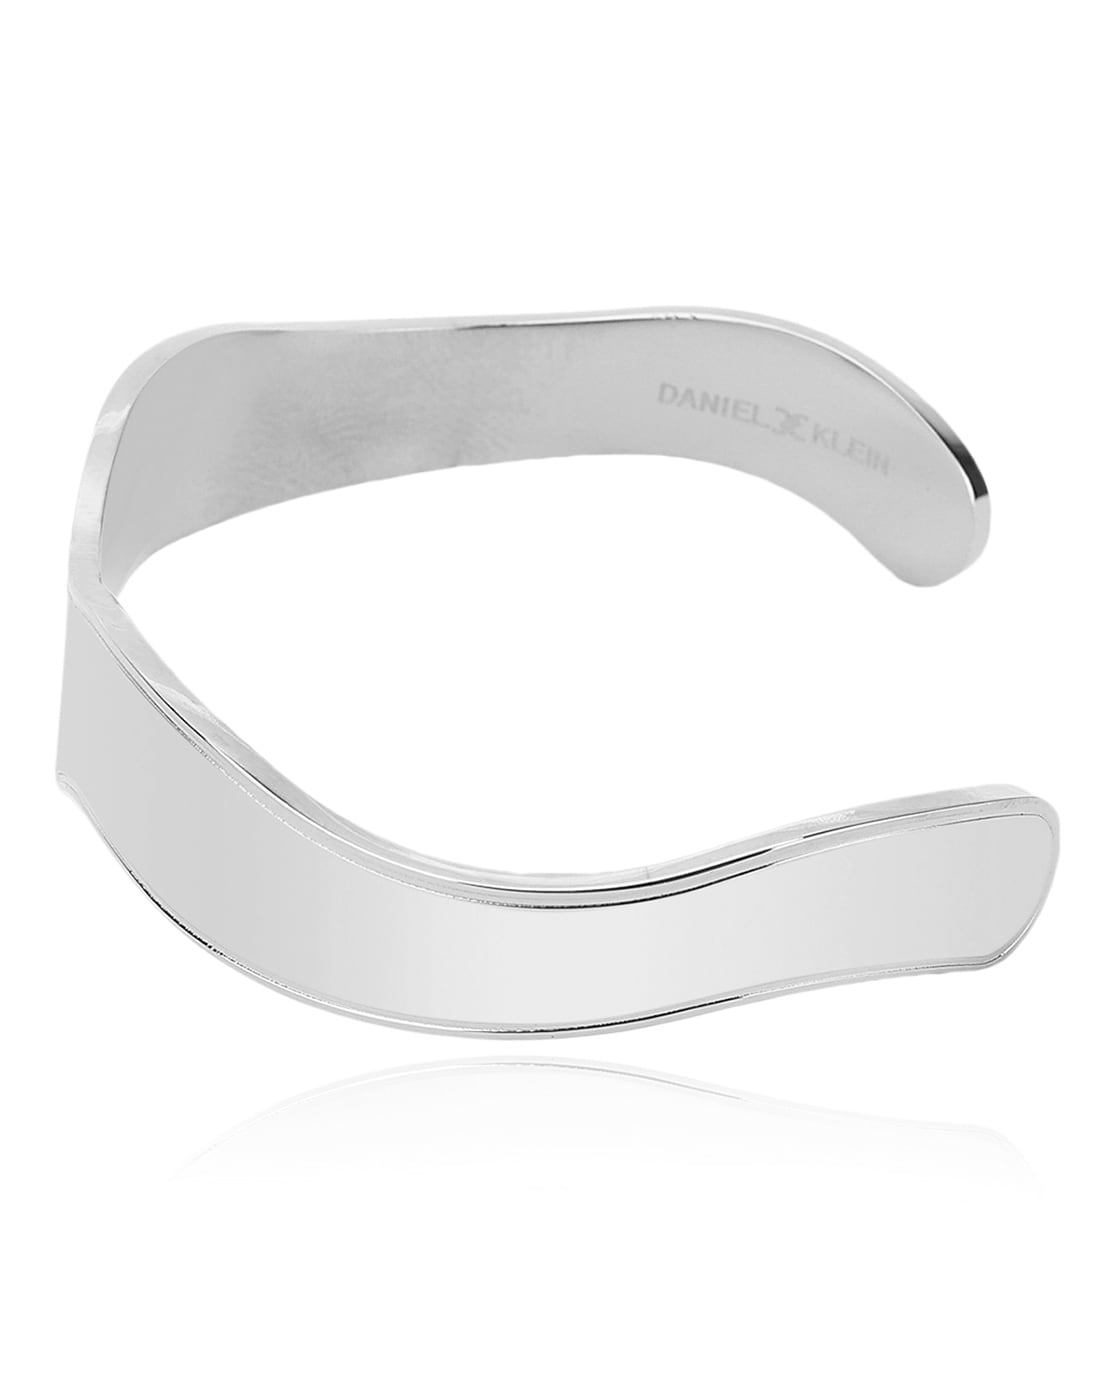 Daniel Klein DK.1.13024-4 Stainless Steel Round 35 mm Hand Watch With  Bracelet for Women -